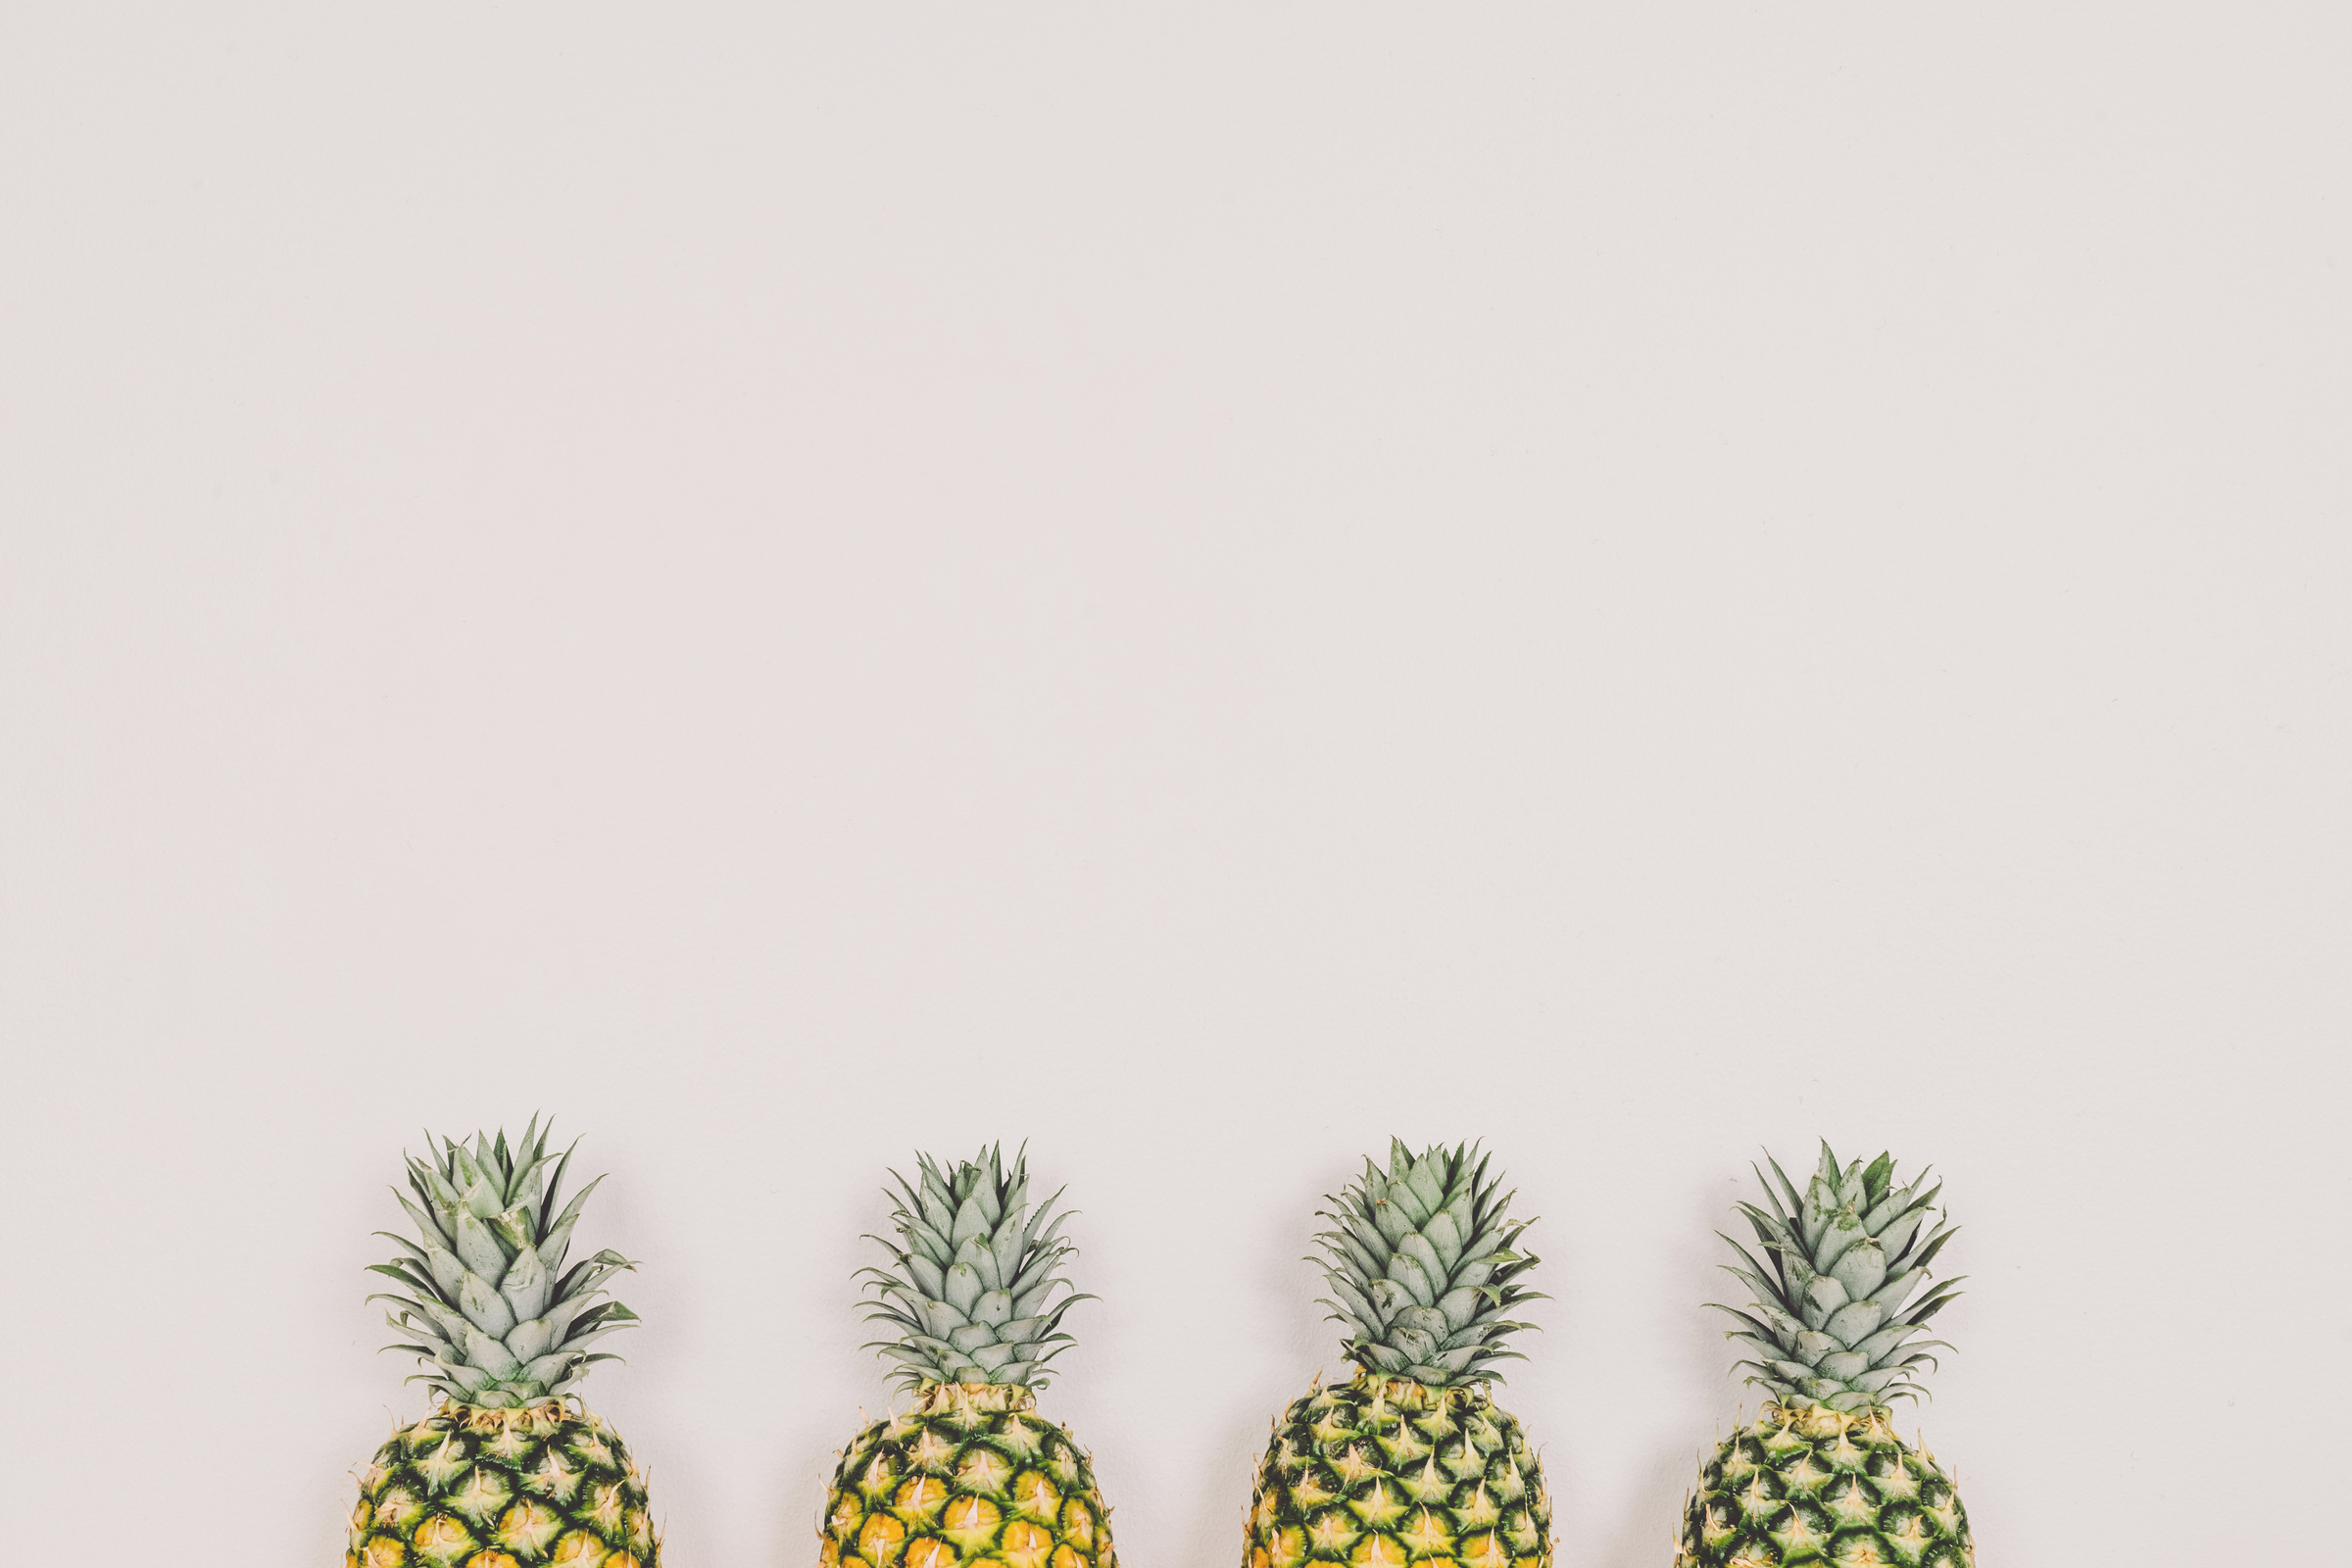 4 Pineapples Photo